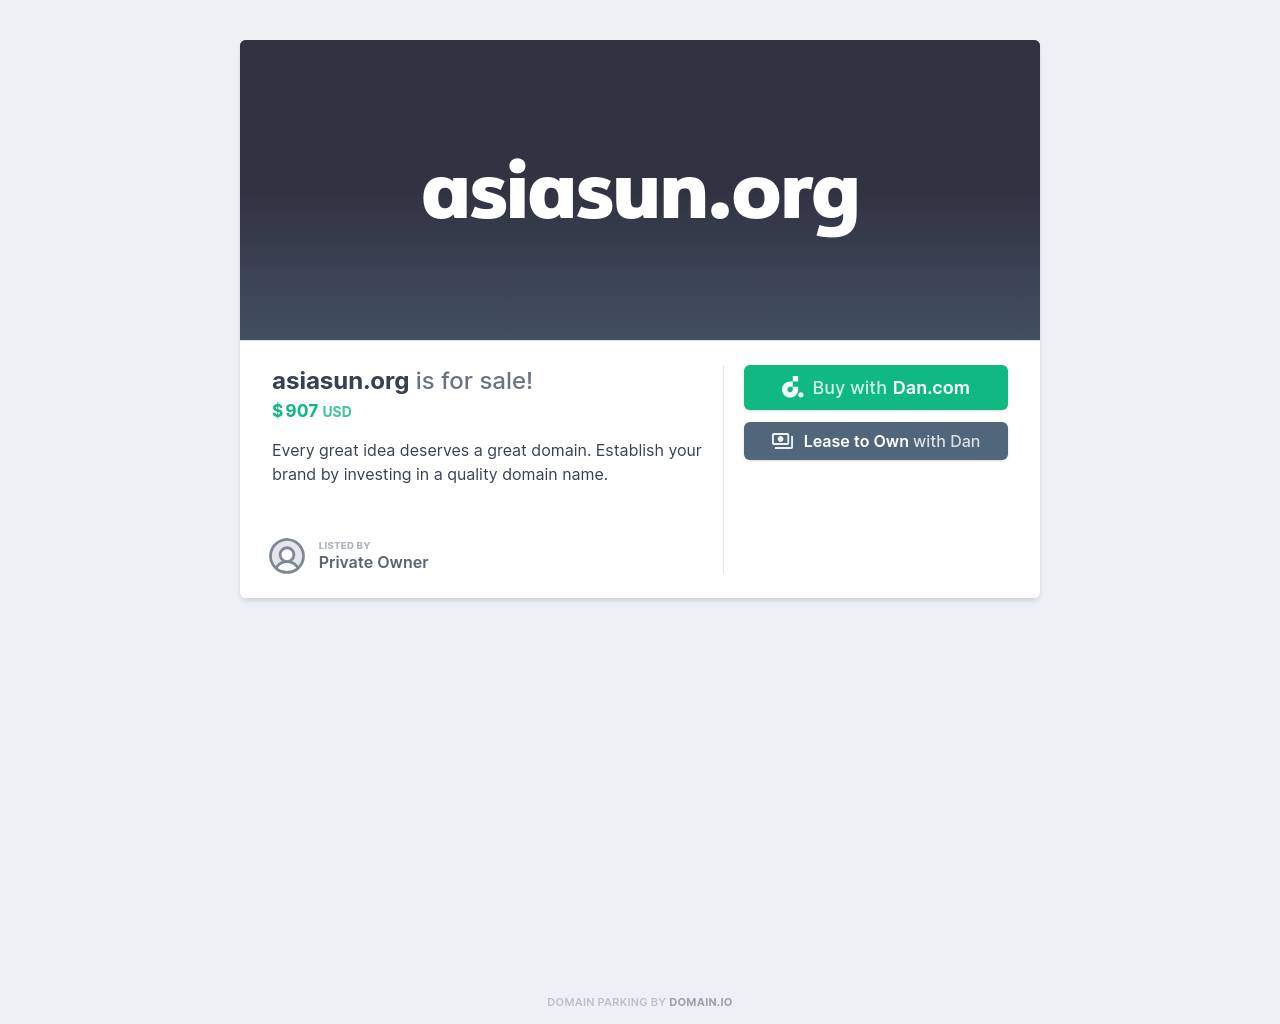 asiasun.org